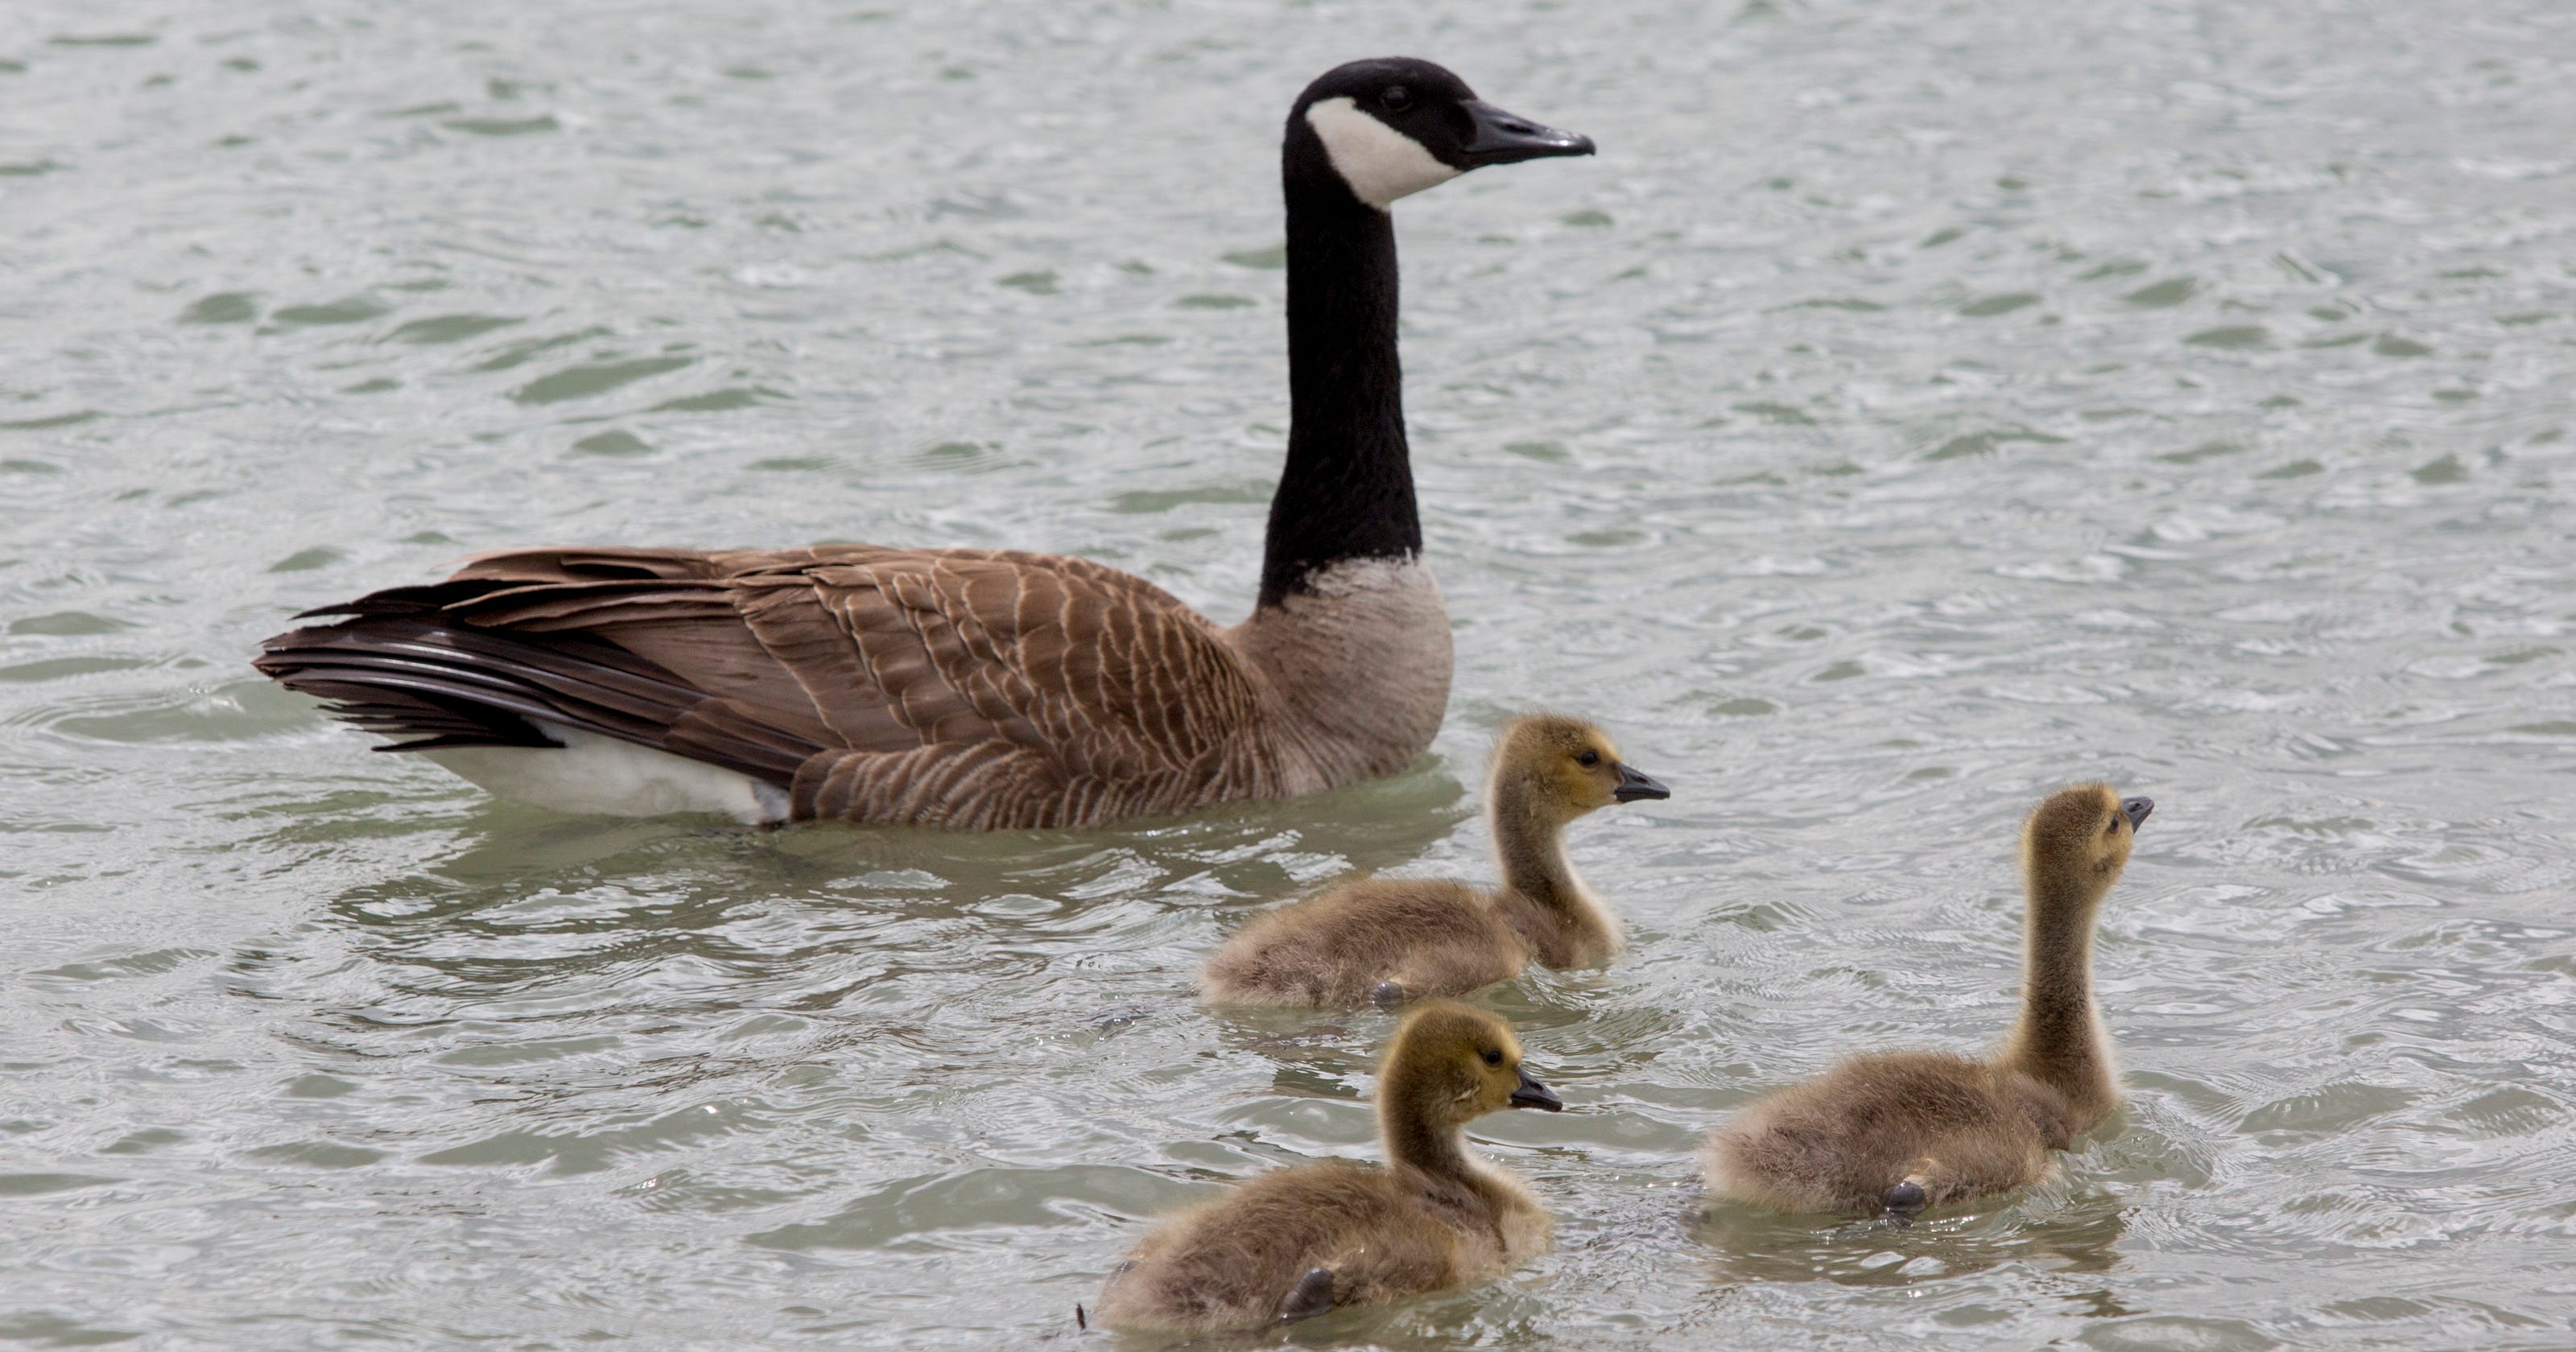 Goose hunting season starts Friday in Michigan